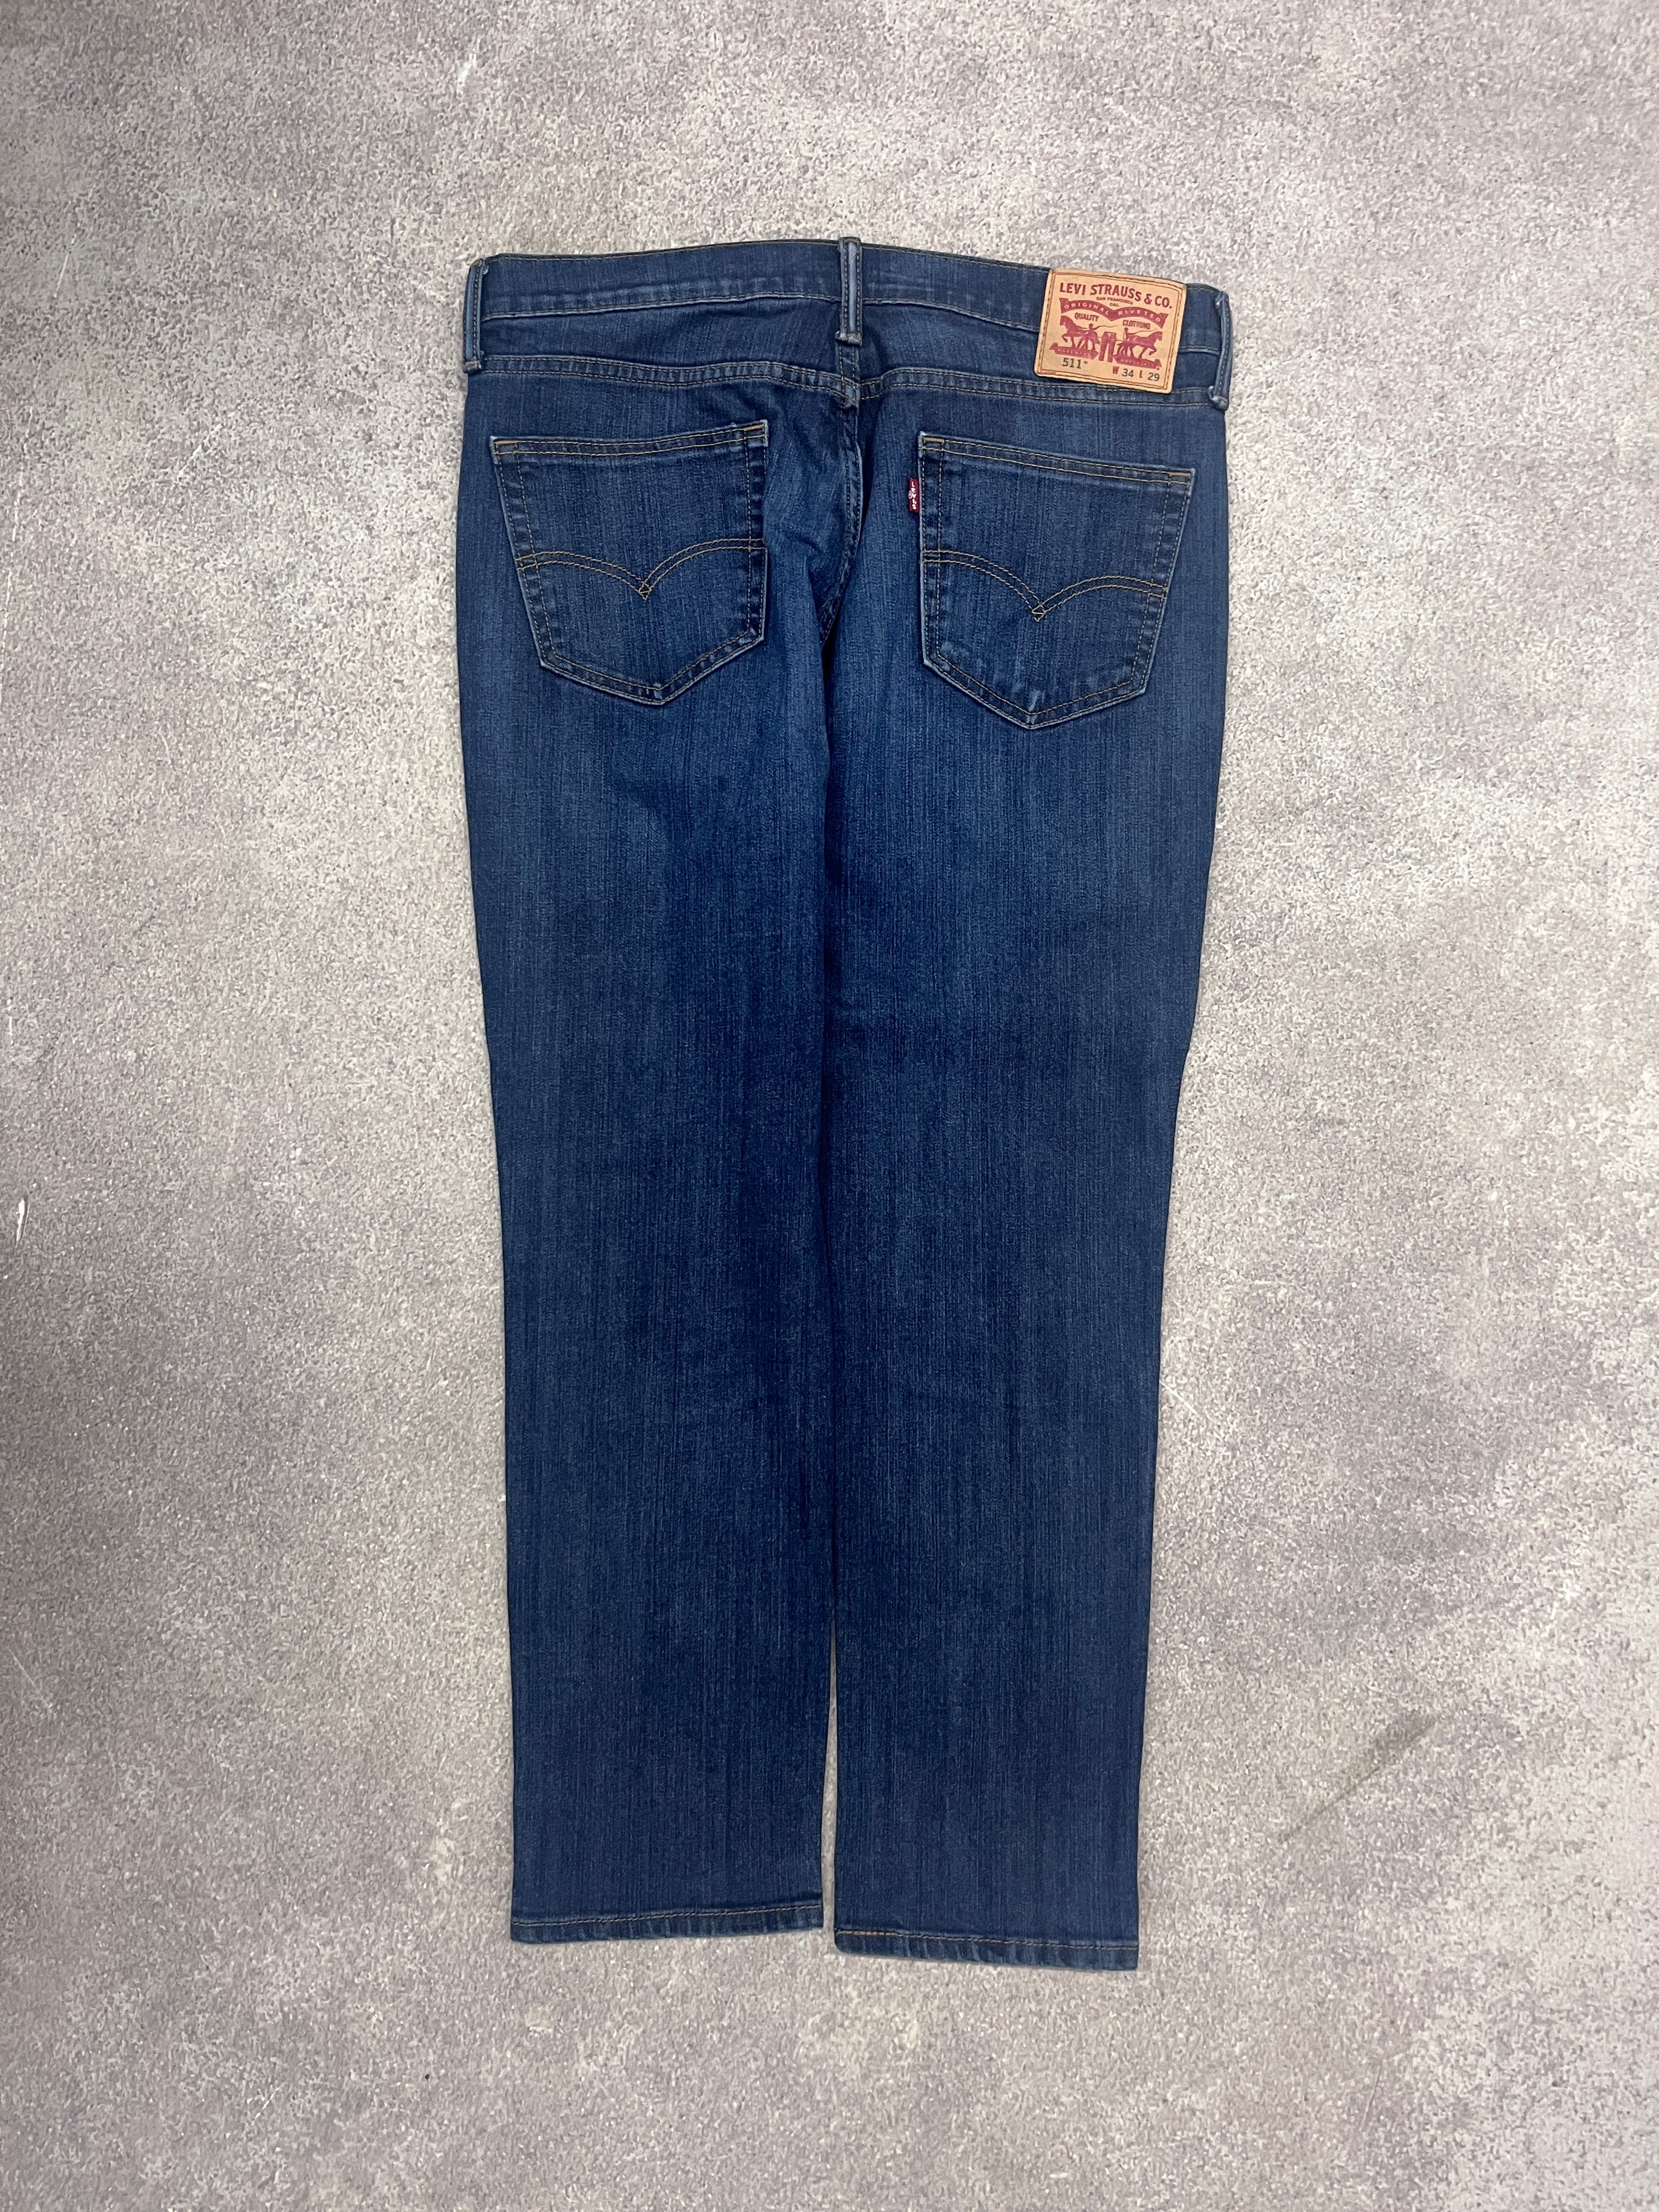 (Kopie) Vintage Levi 511 Denim Jeans Blue // W34 L29 - RHAGHOUSE VINTAGE